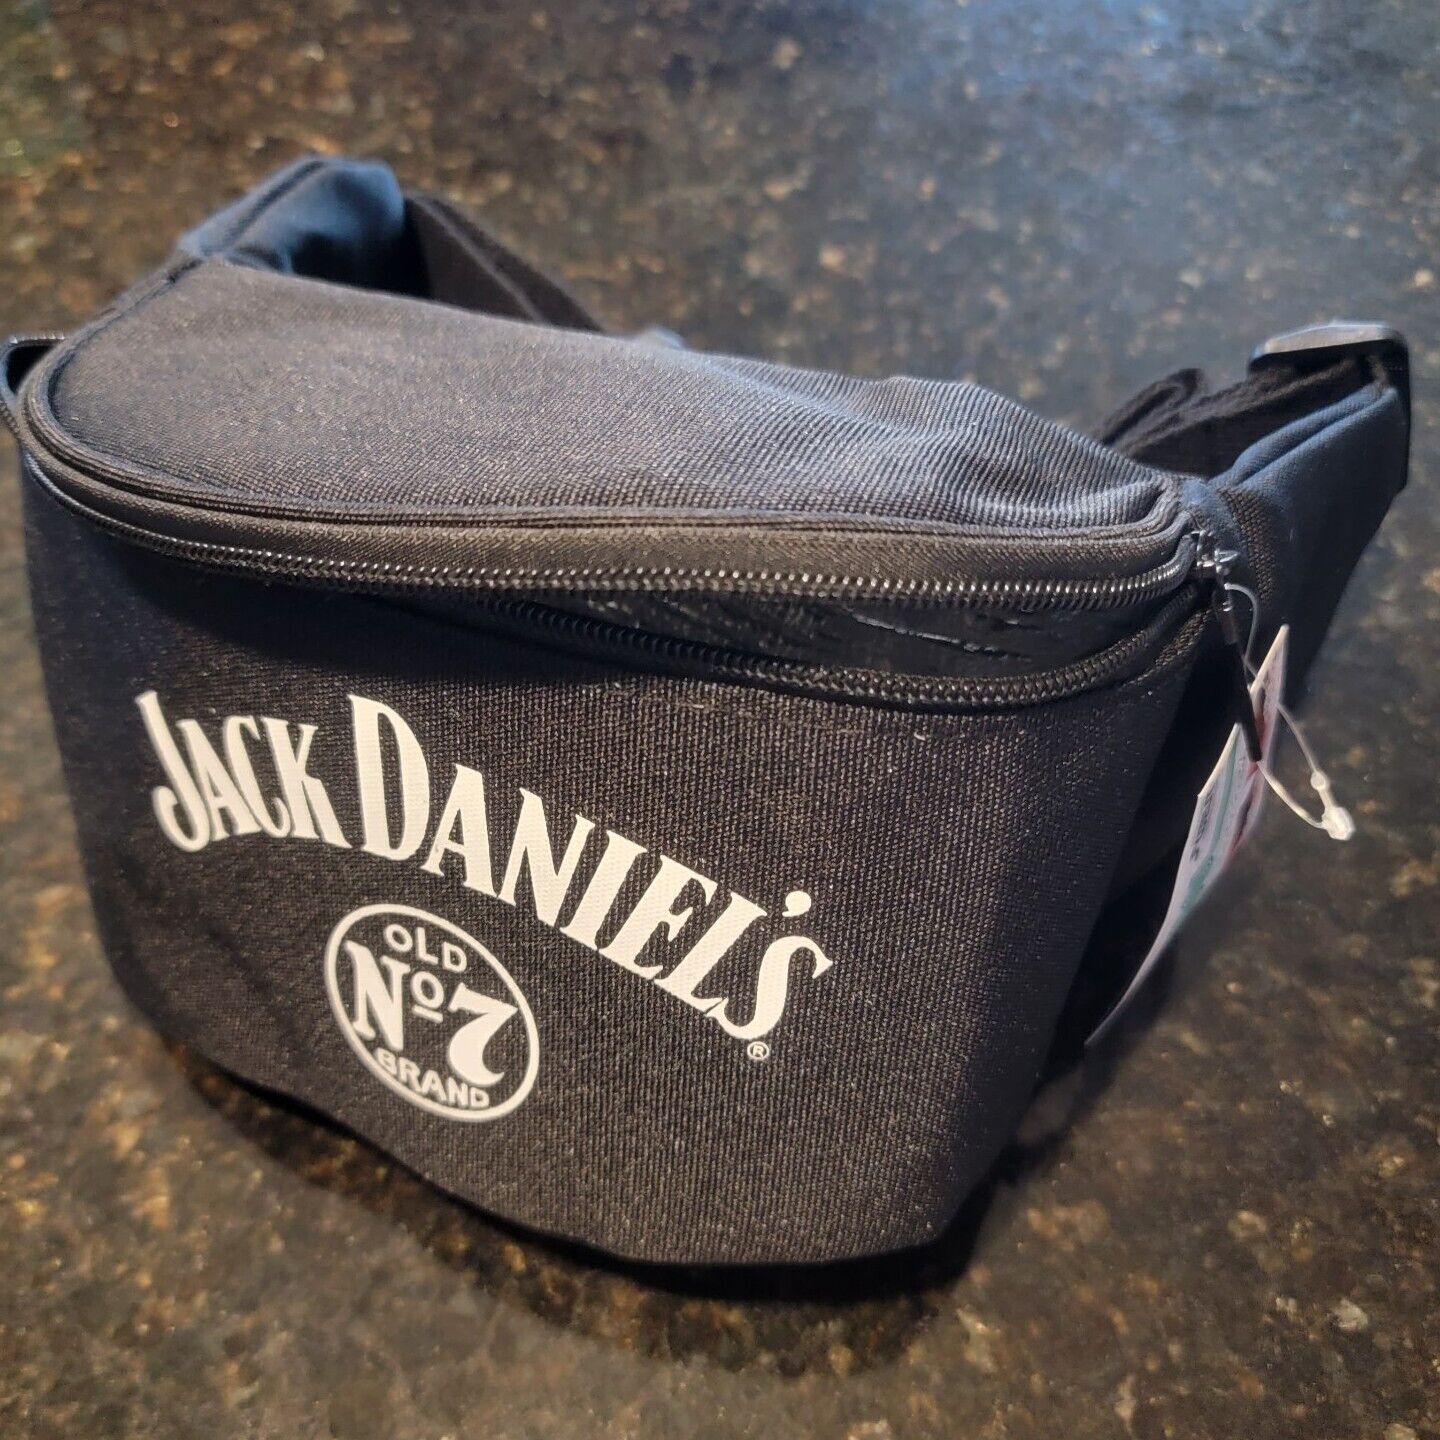 Jack Daniels No 7 Beer Fanny Pack Belt Kooler Cooler - Holds 3 Cans